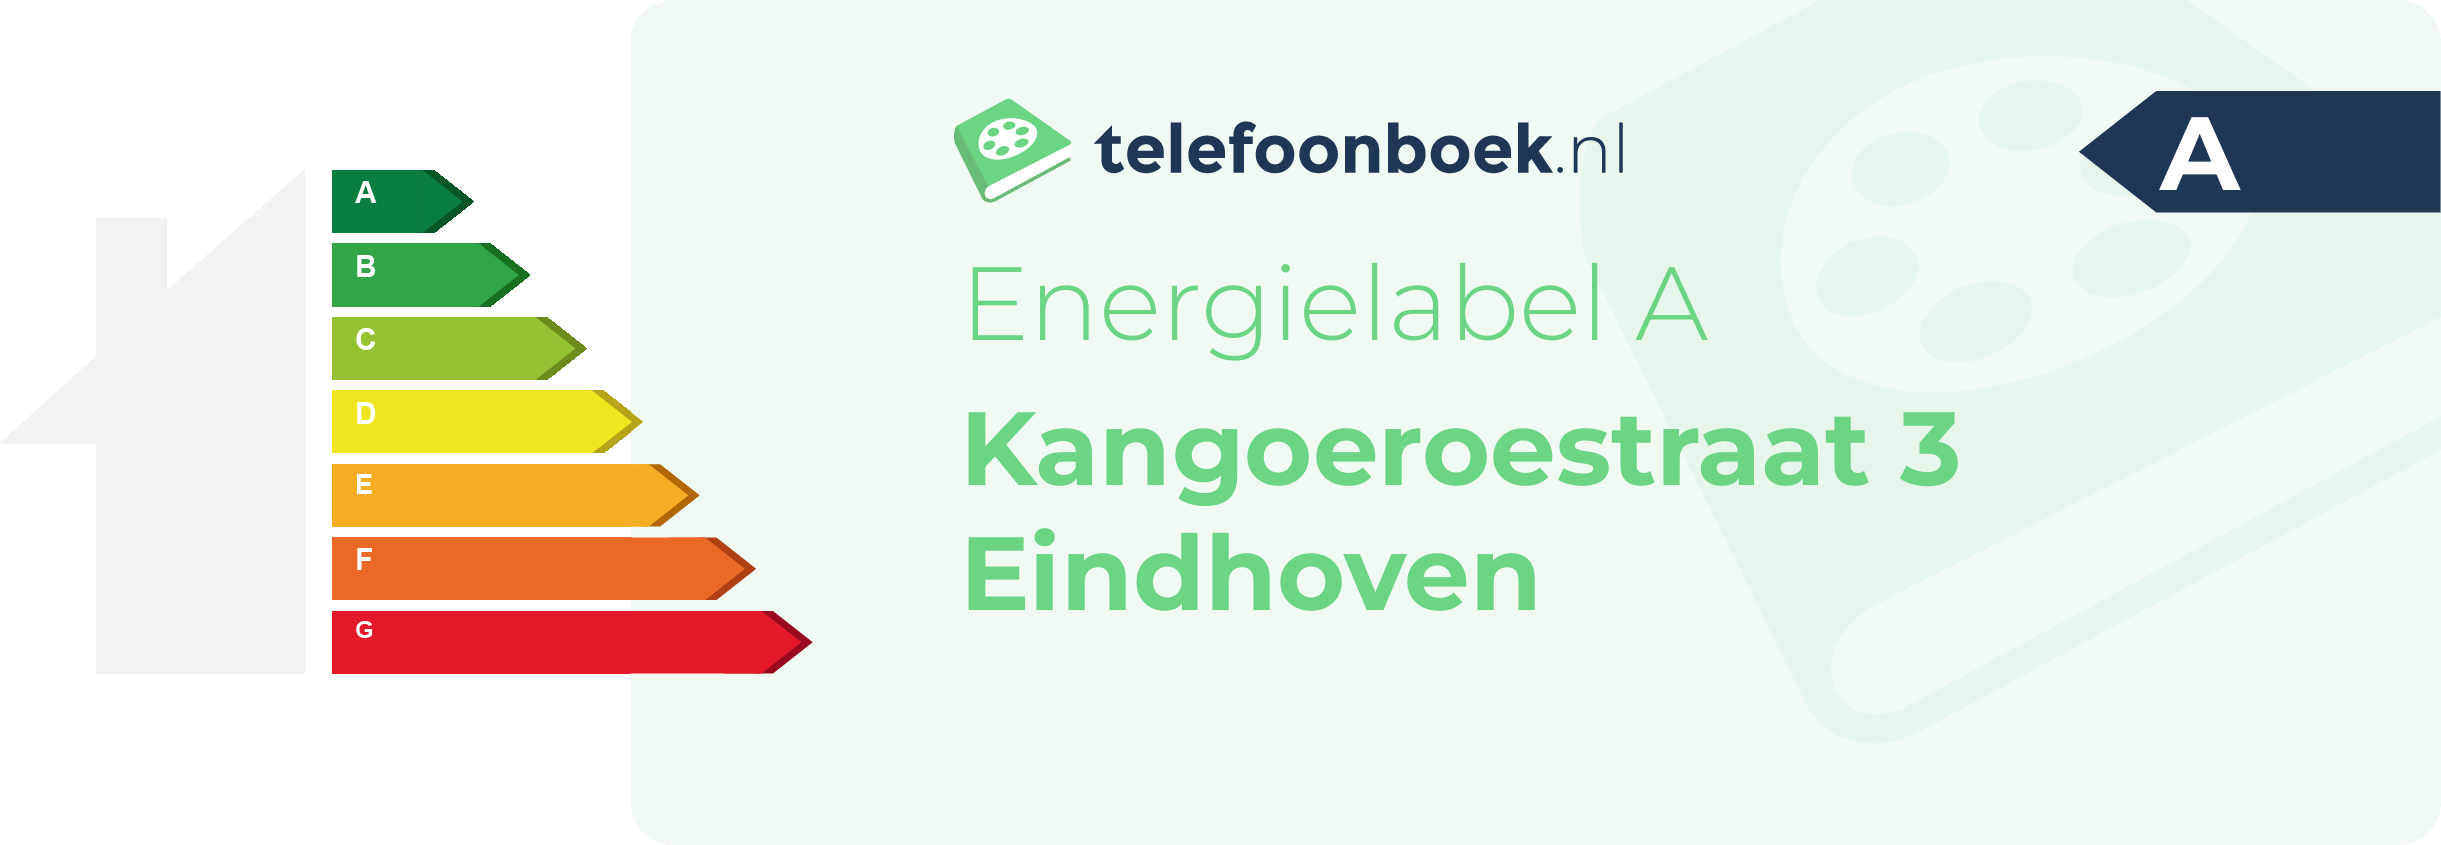 Energielabel Kangoeroestraat 3 Eindhoven